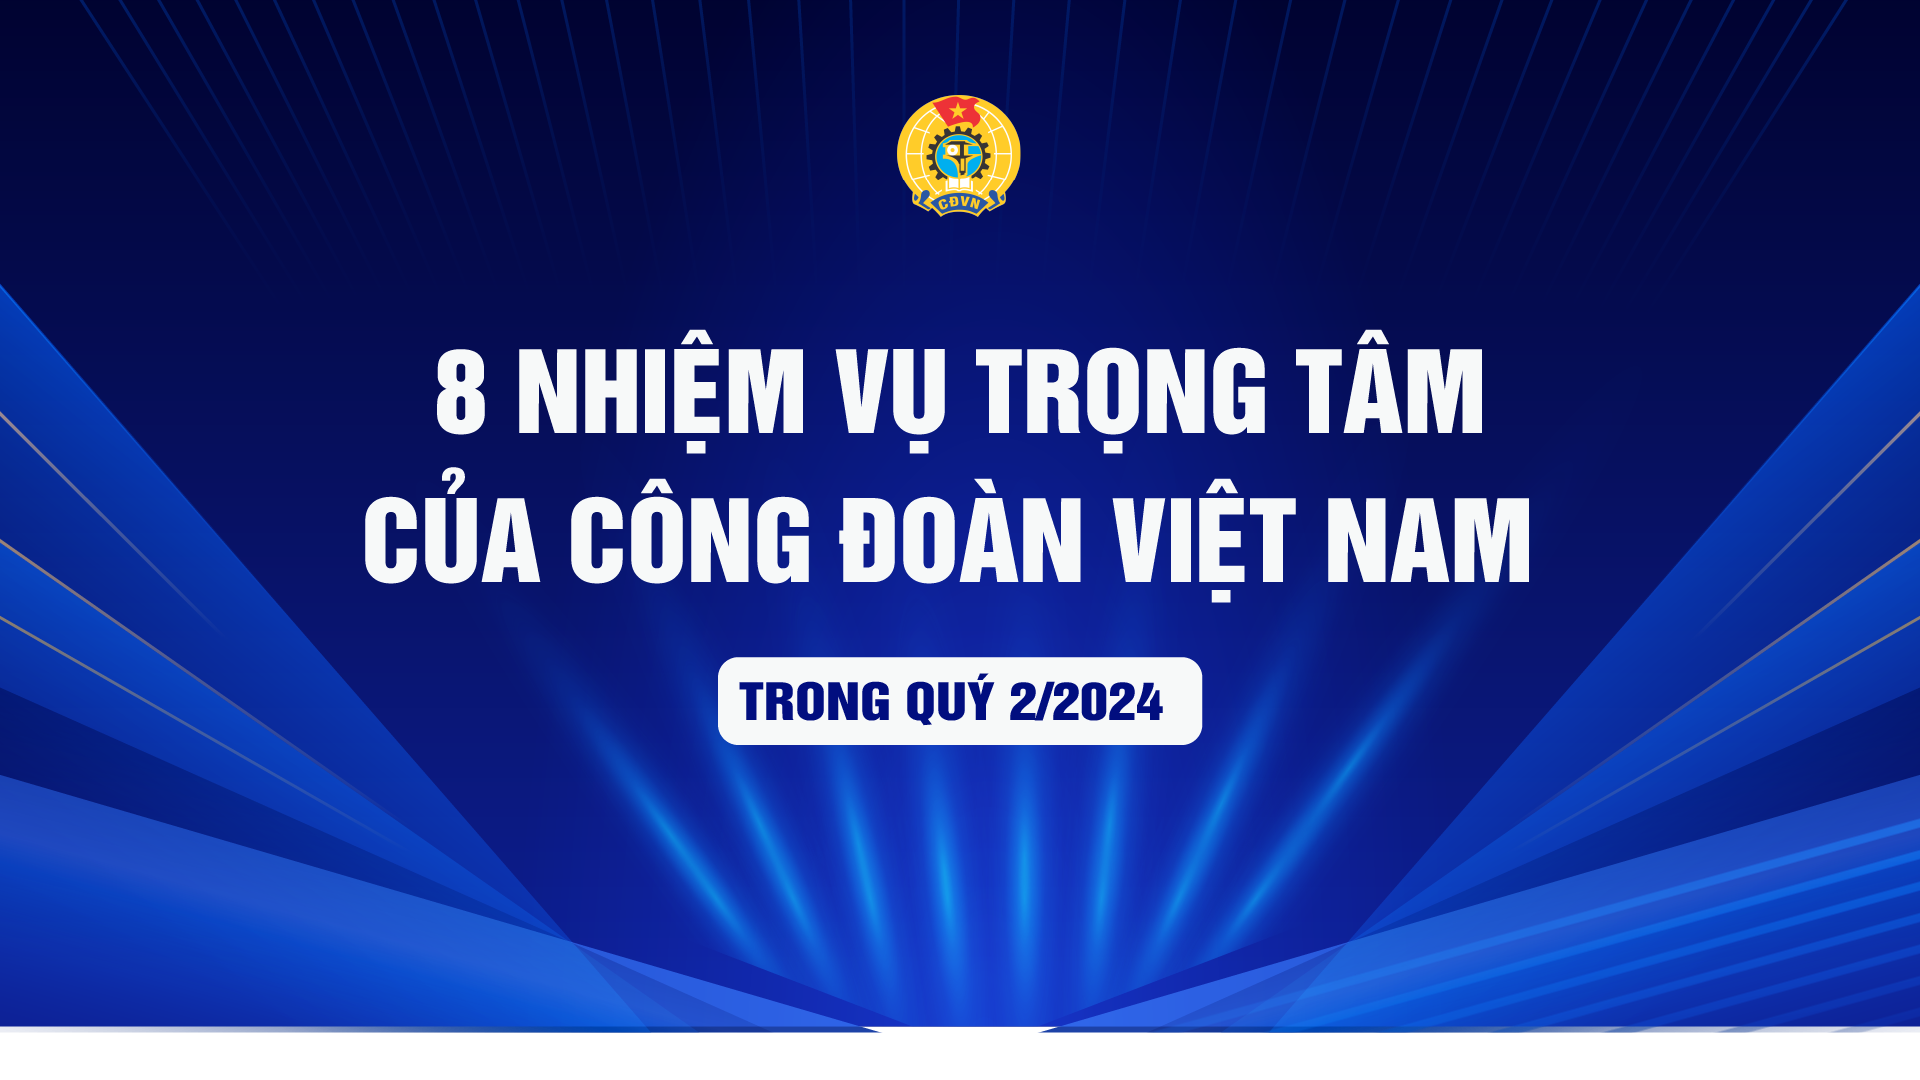 8 nhiệm vụ trọng tâm của Công đoàn Việt Nam trong quý 2/2024